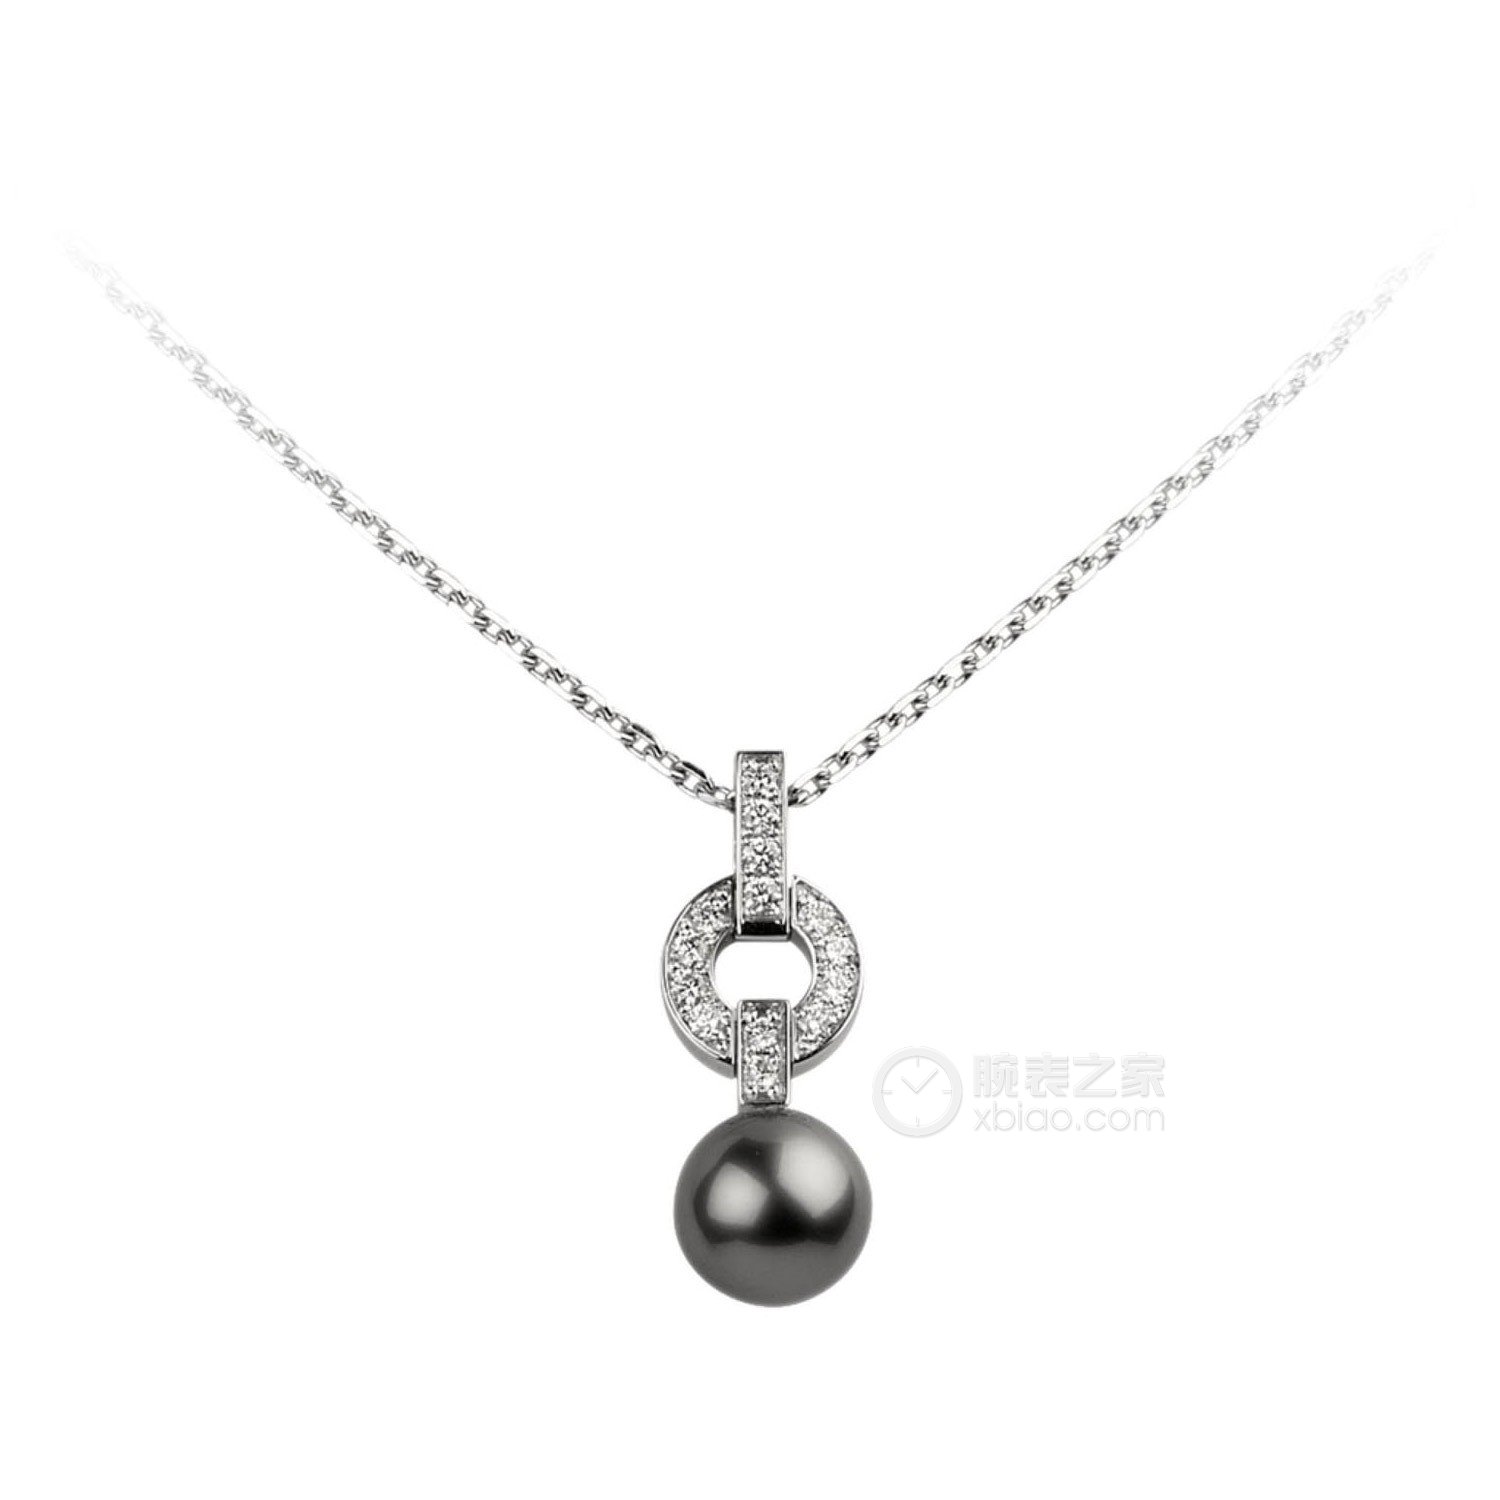 卡地亚珍珠系列b3038300项链(1/7)查看原图参考价格:价格:暂无欧元€